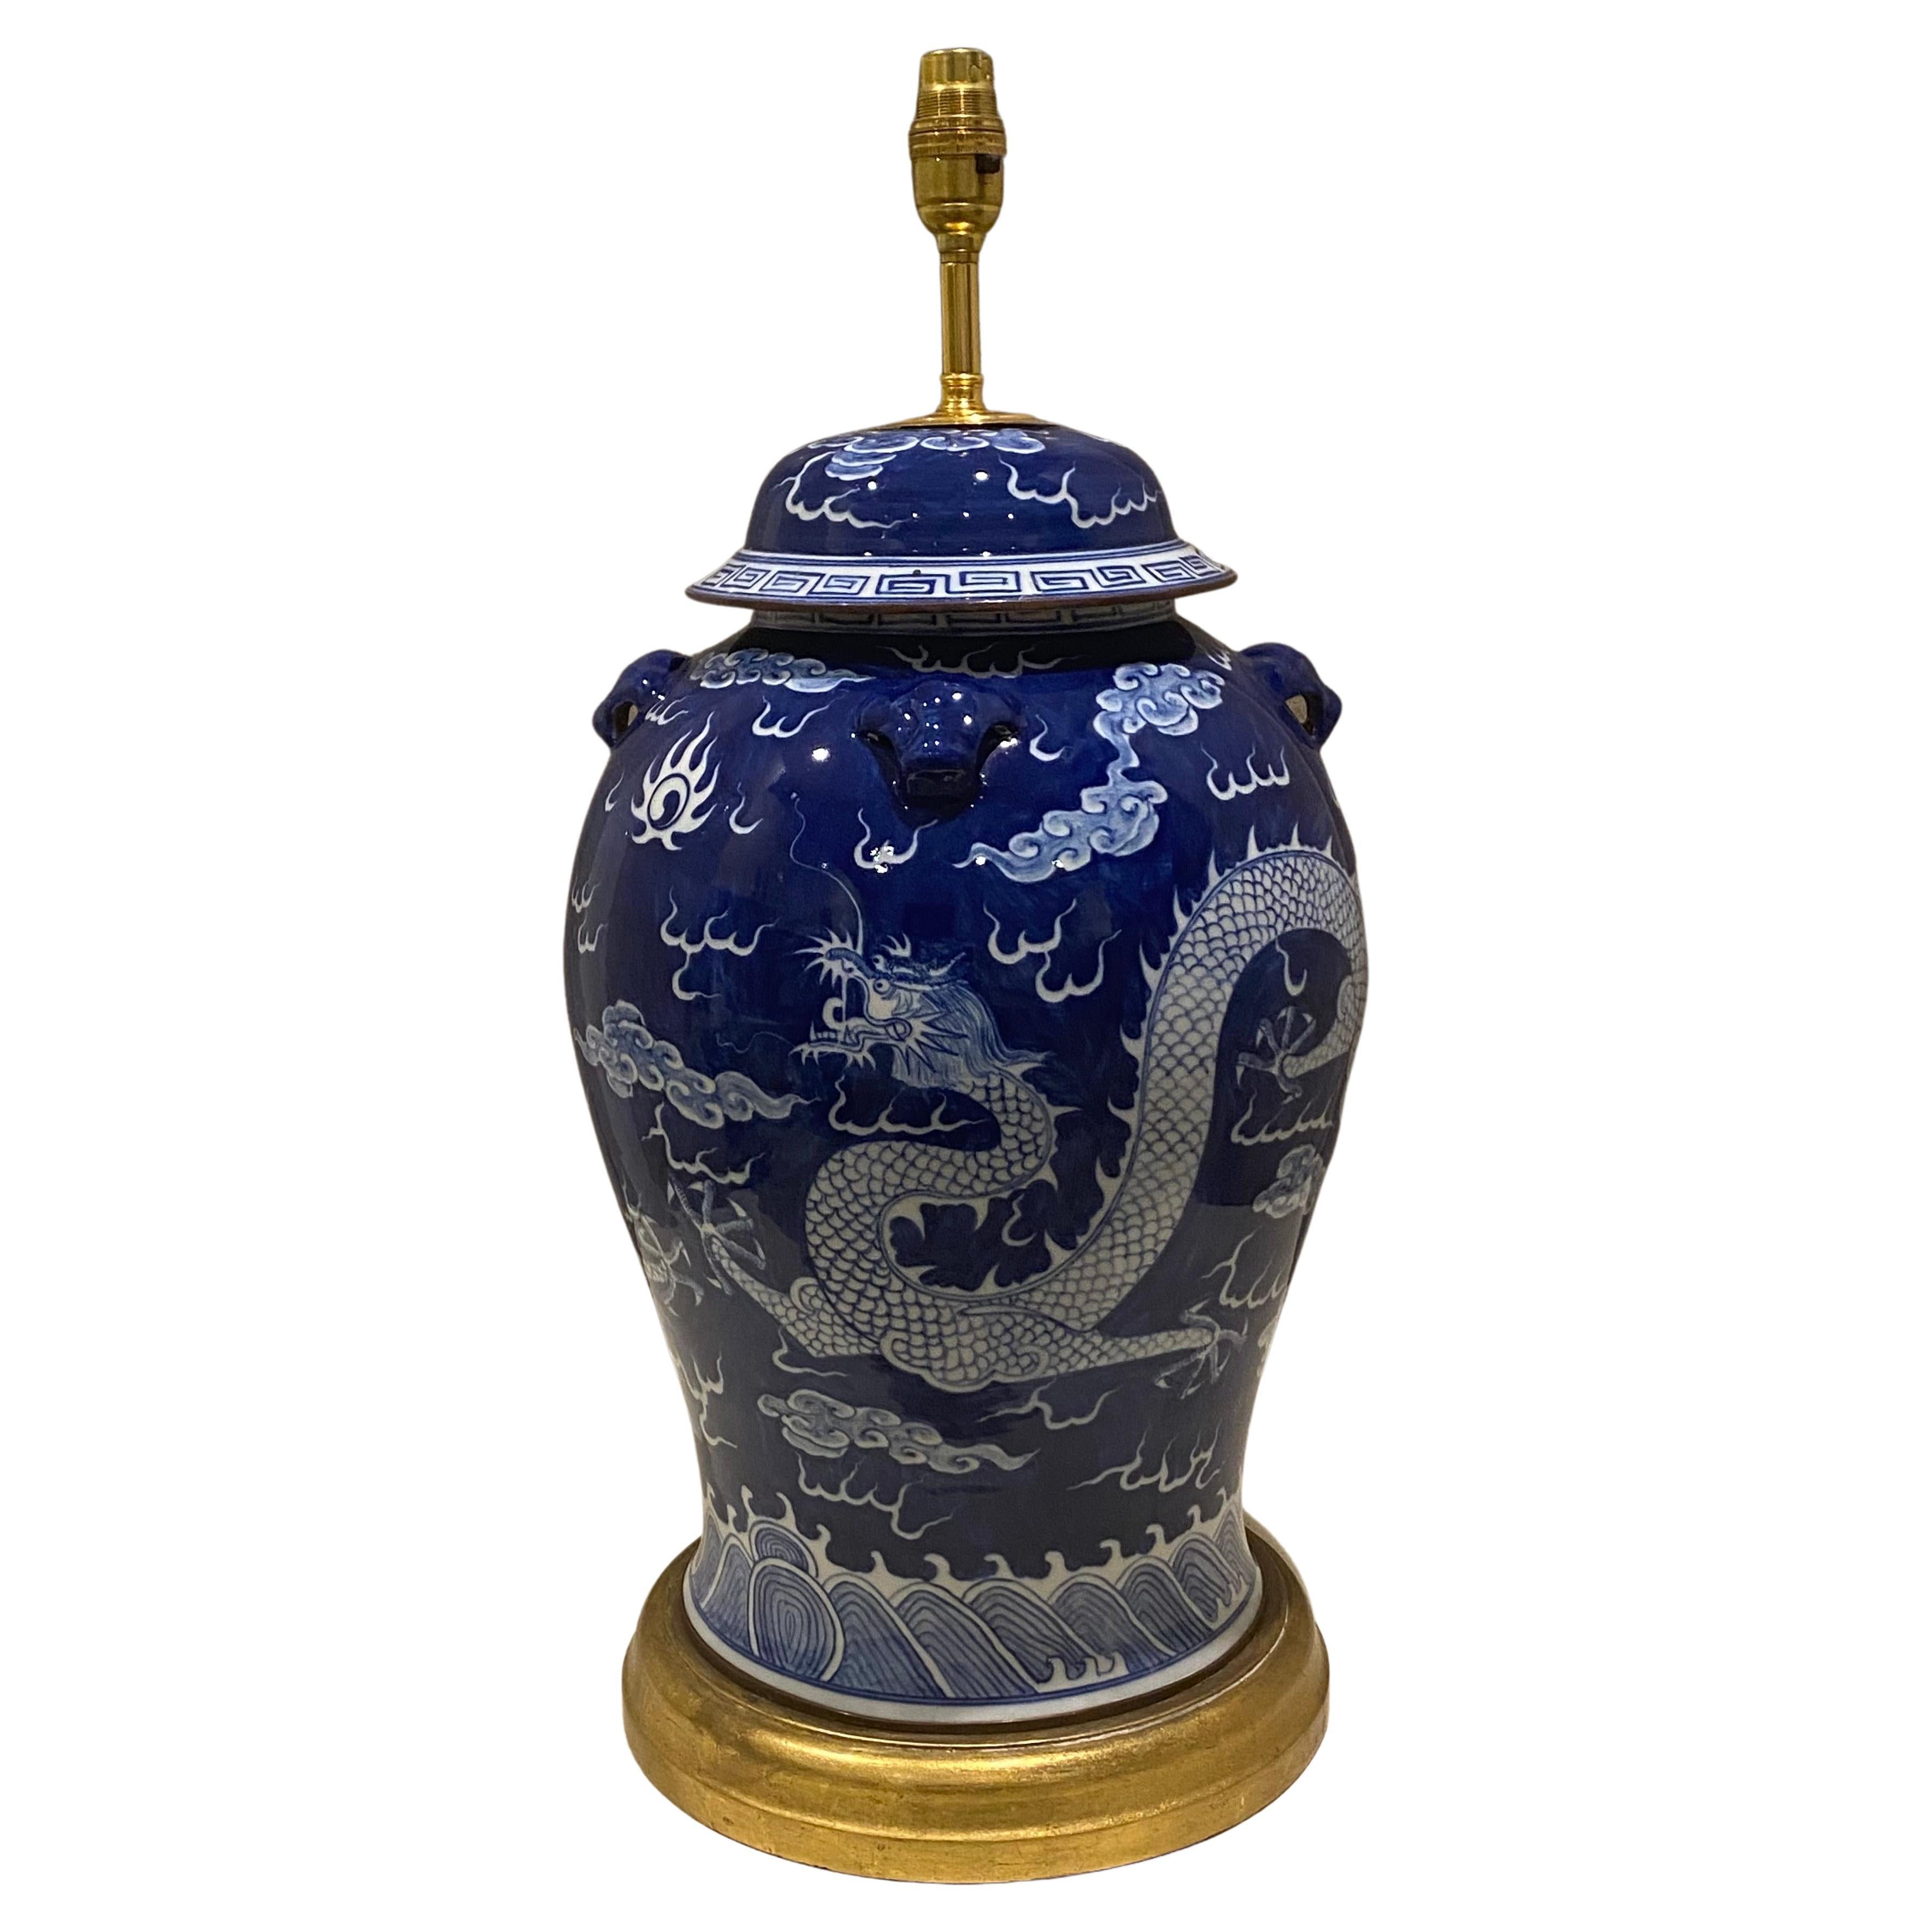 Huge Vintage Table Lamp Jar in Ming Blue & White Porcelain